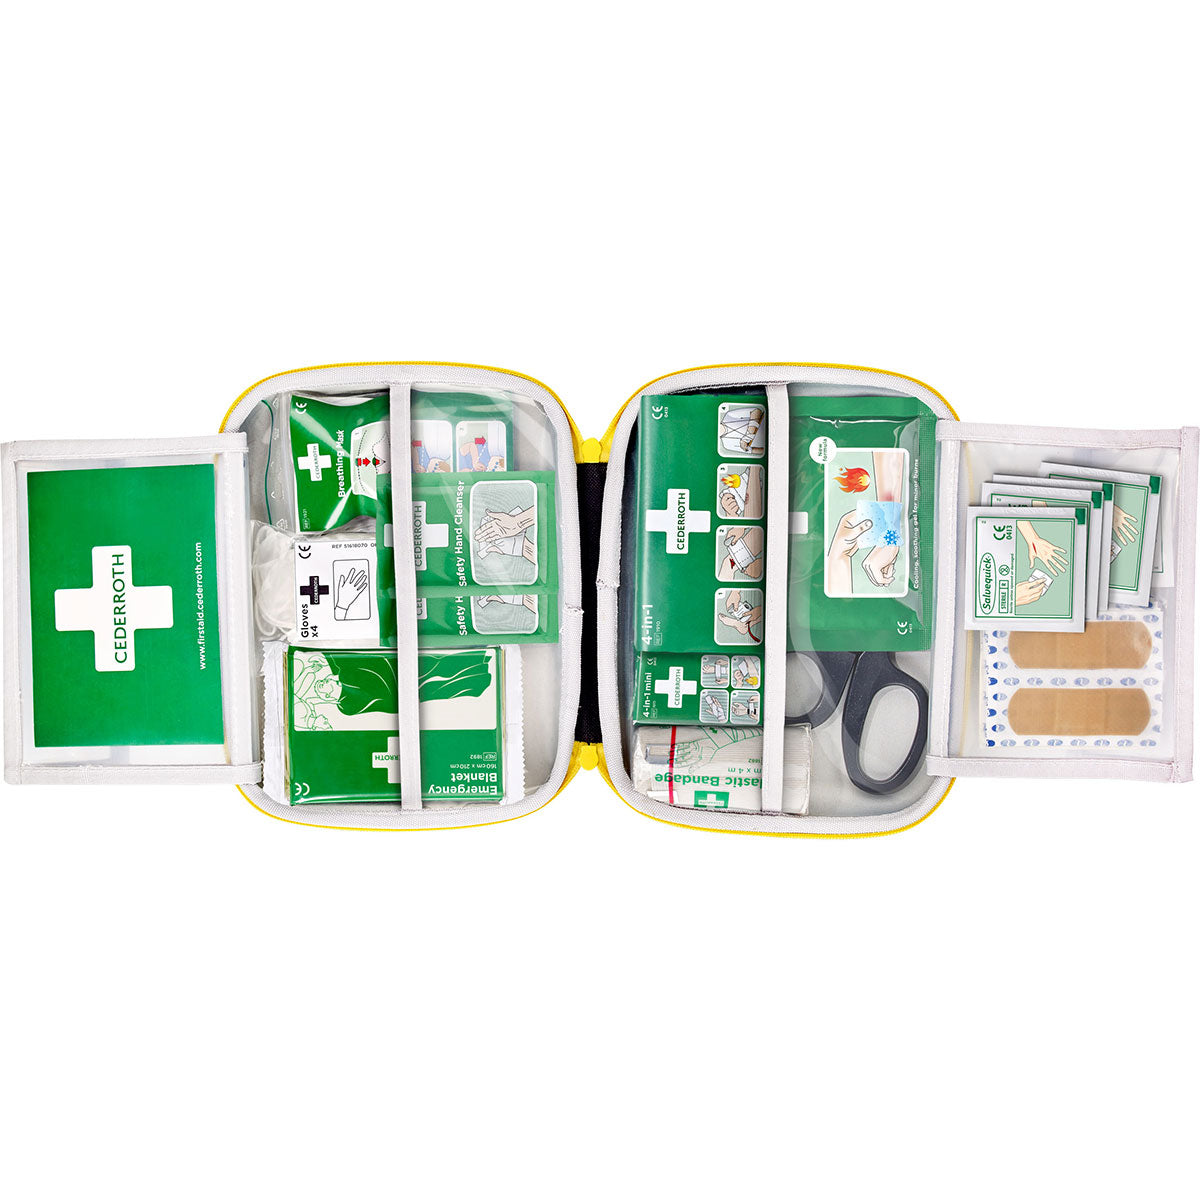 Första Hjälpen-väska, Cederroth First Aid Kit Medium